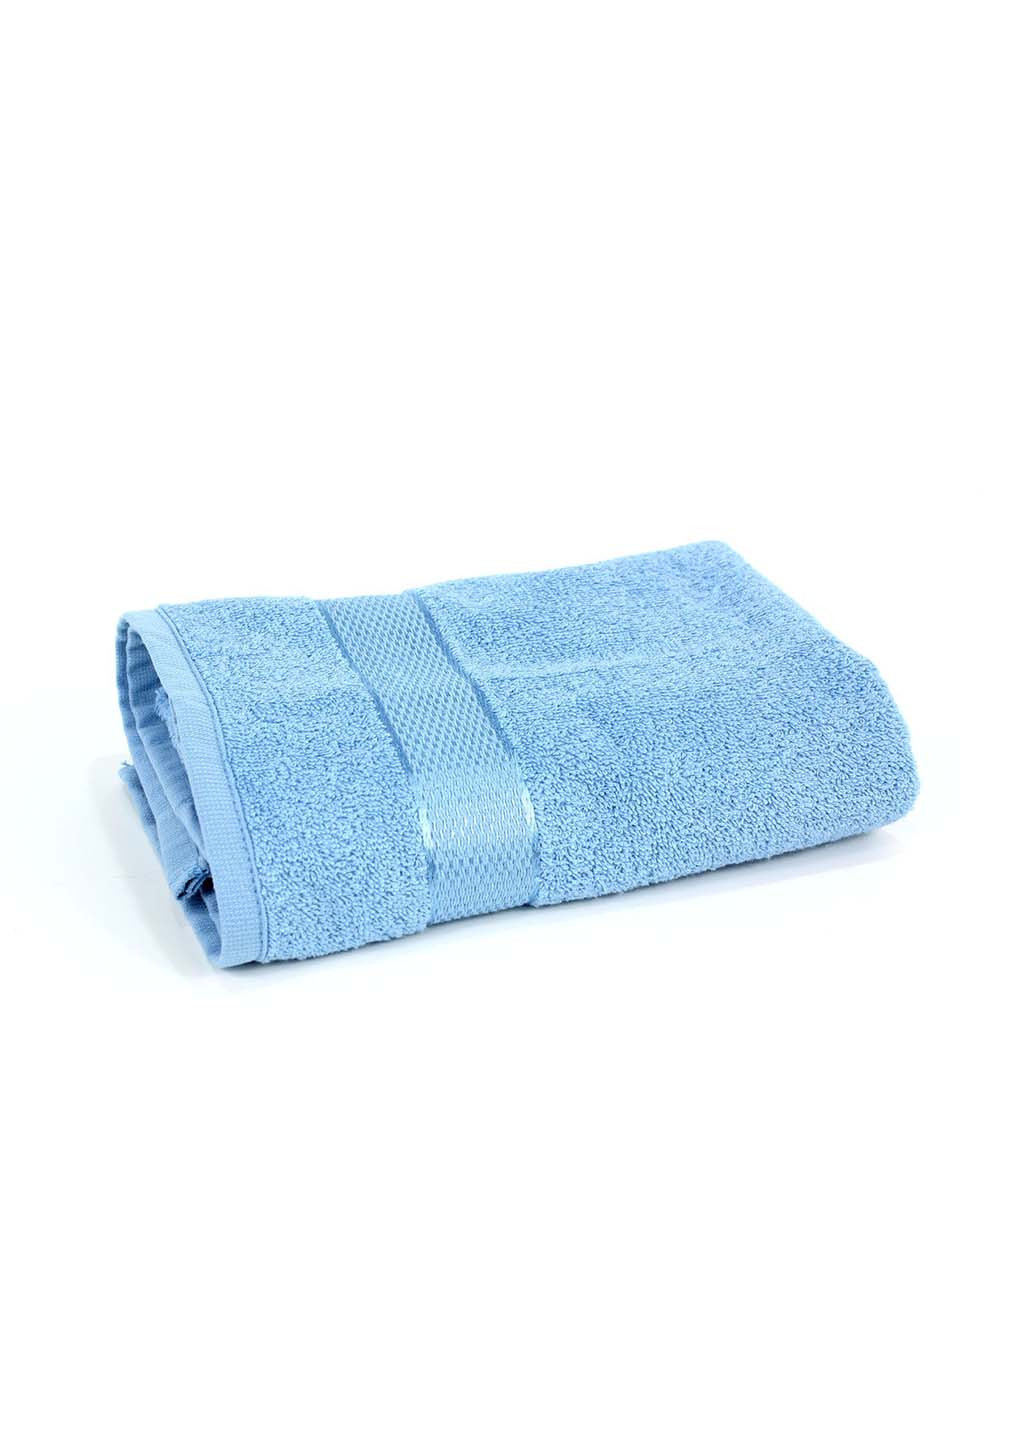 Еней-Плюс полотенце махровое бс0016 50х90 голубой производство - Украина